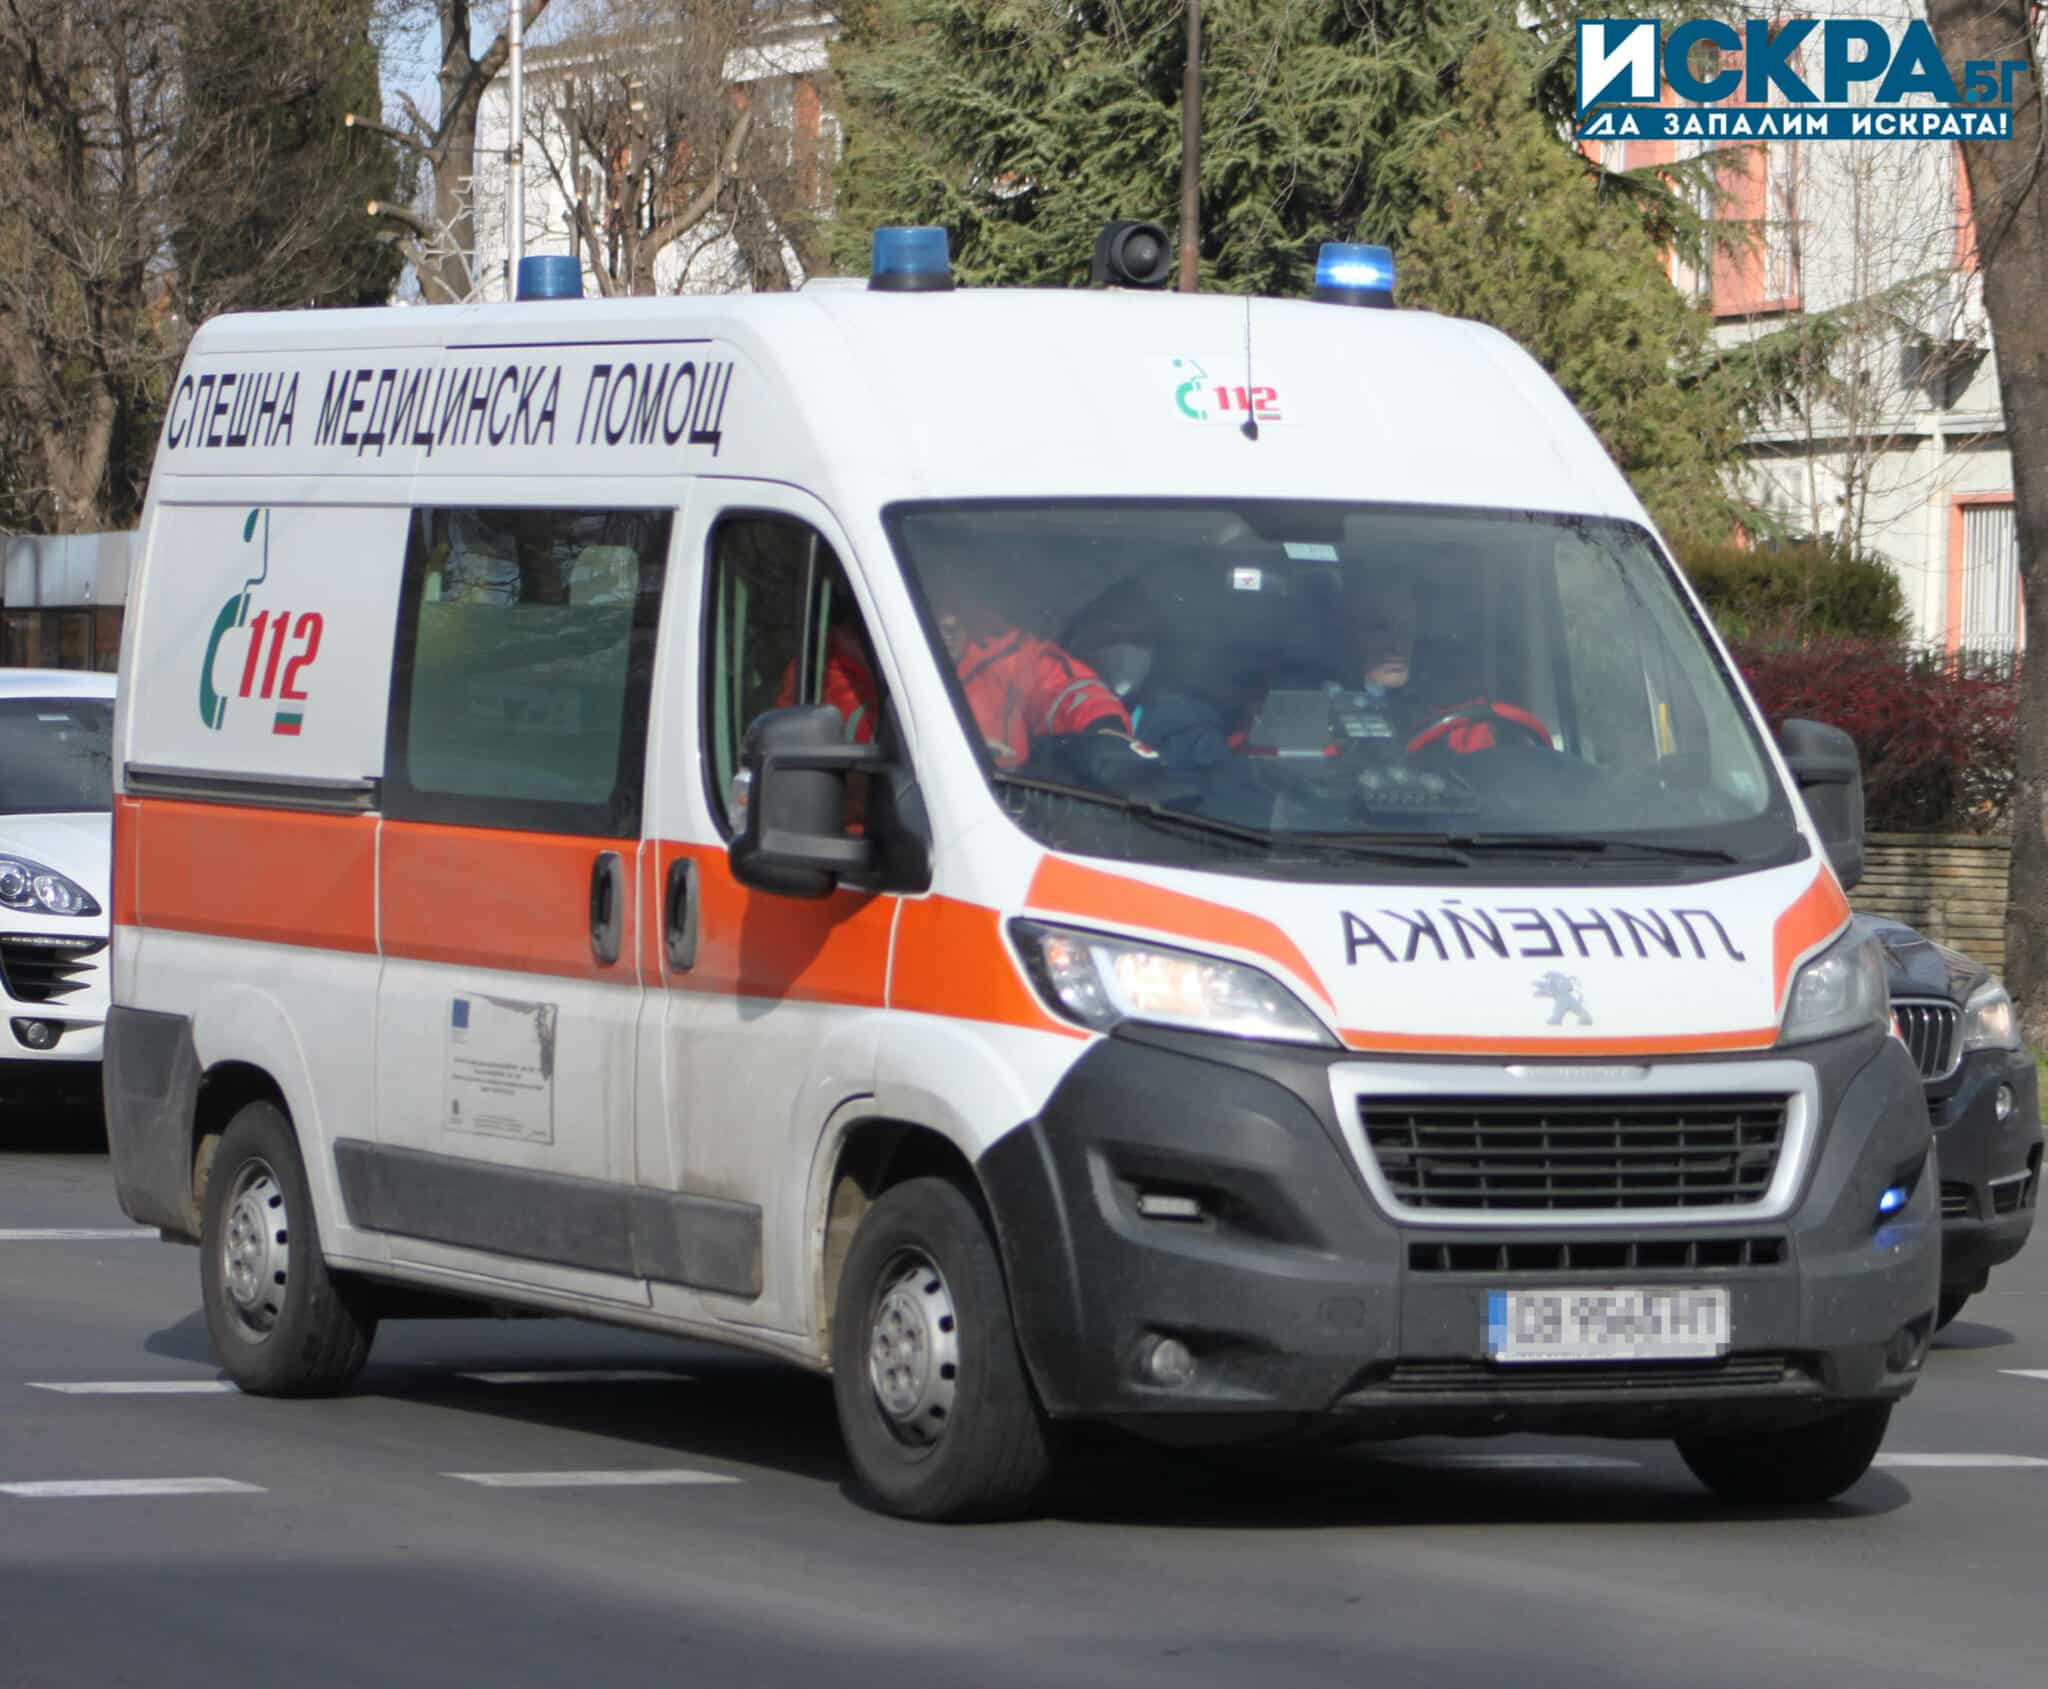 Жена е пострадала след удар от кола в Казанлък, съобщиха